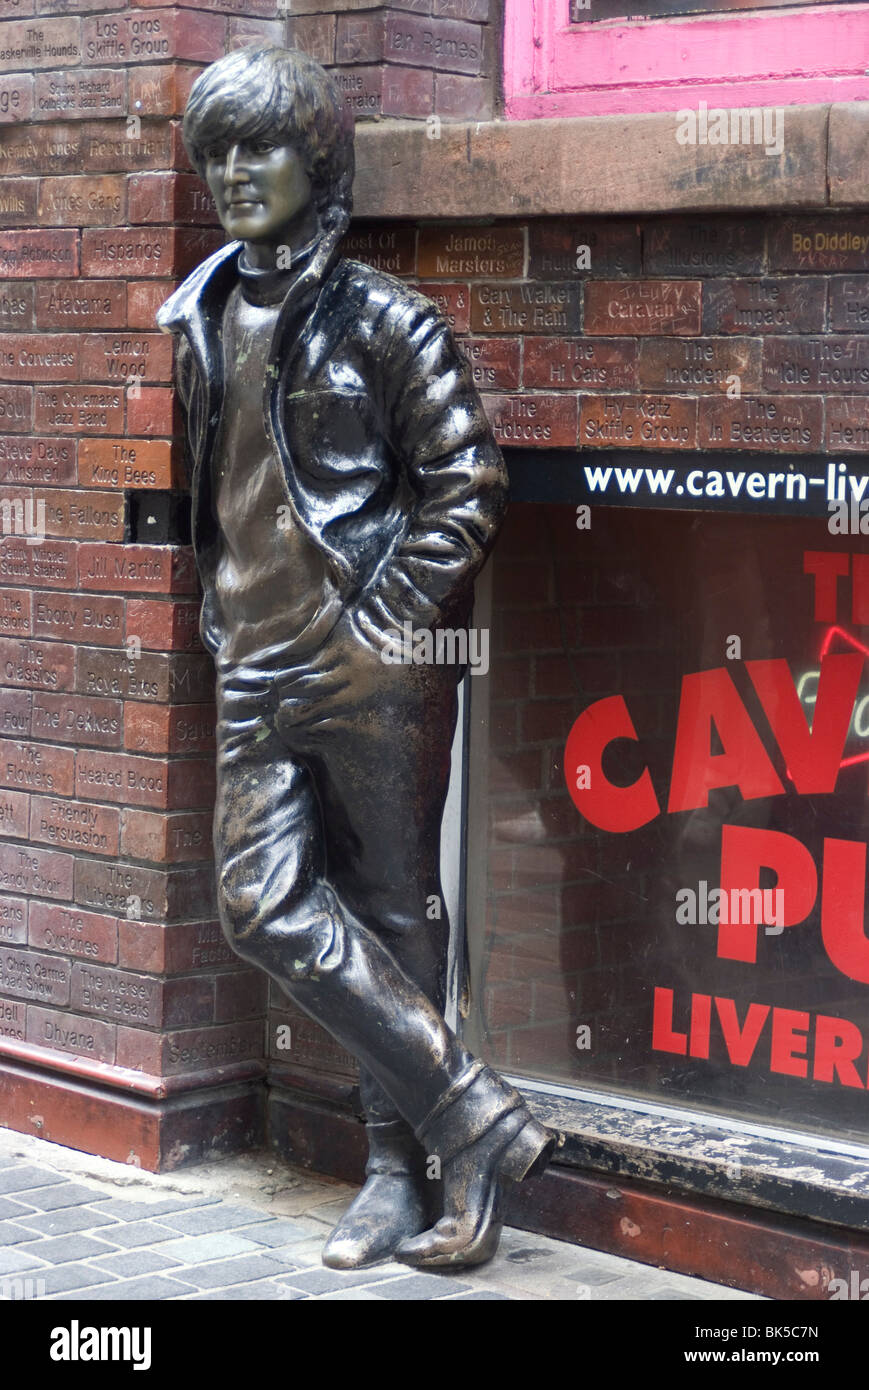 Statue von John Lennon in der Nähe der ursprünglichen Cavern Club, Matthew Street, Liverpool, Merseyside, England, Vereinigtes Königreich, Europa Stockfoto